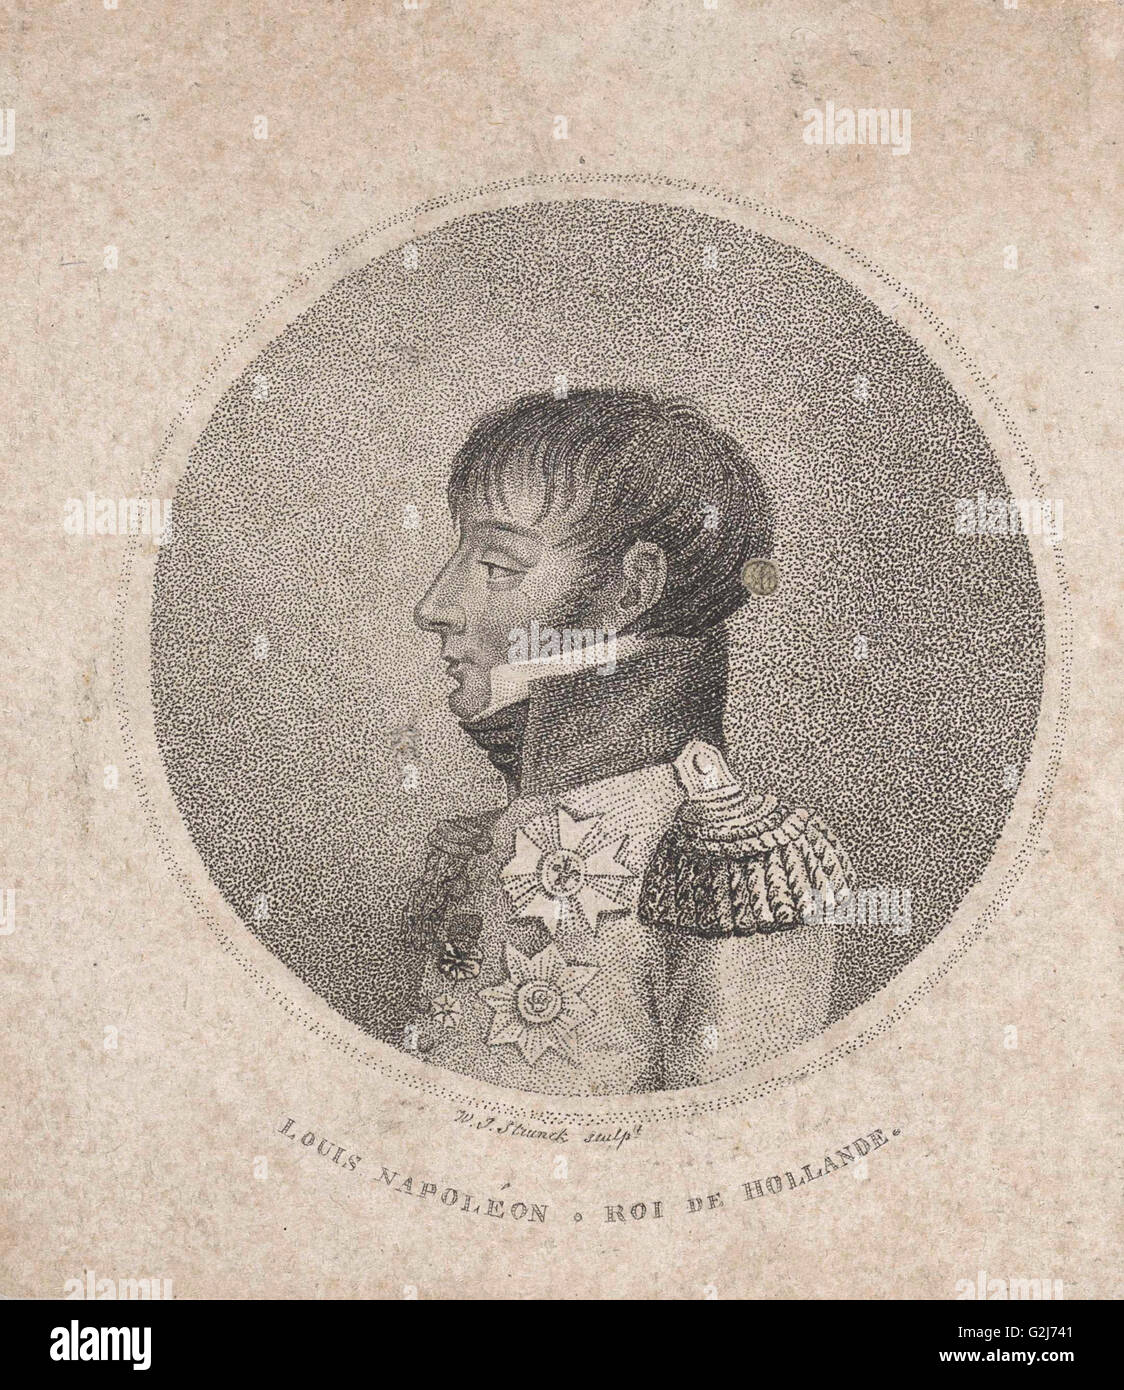 Portrait de Louis Napoléon Bonaparte, Jacob Willem Strunck, 1806 - 1810 Banque D'Images